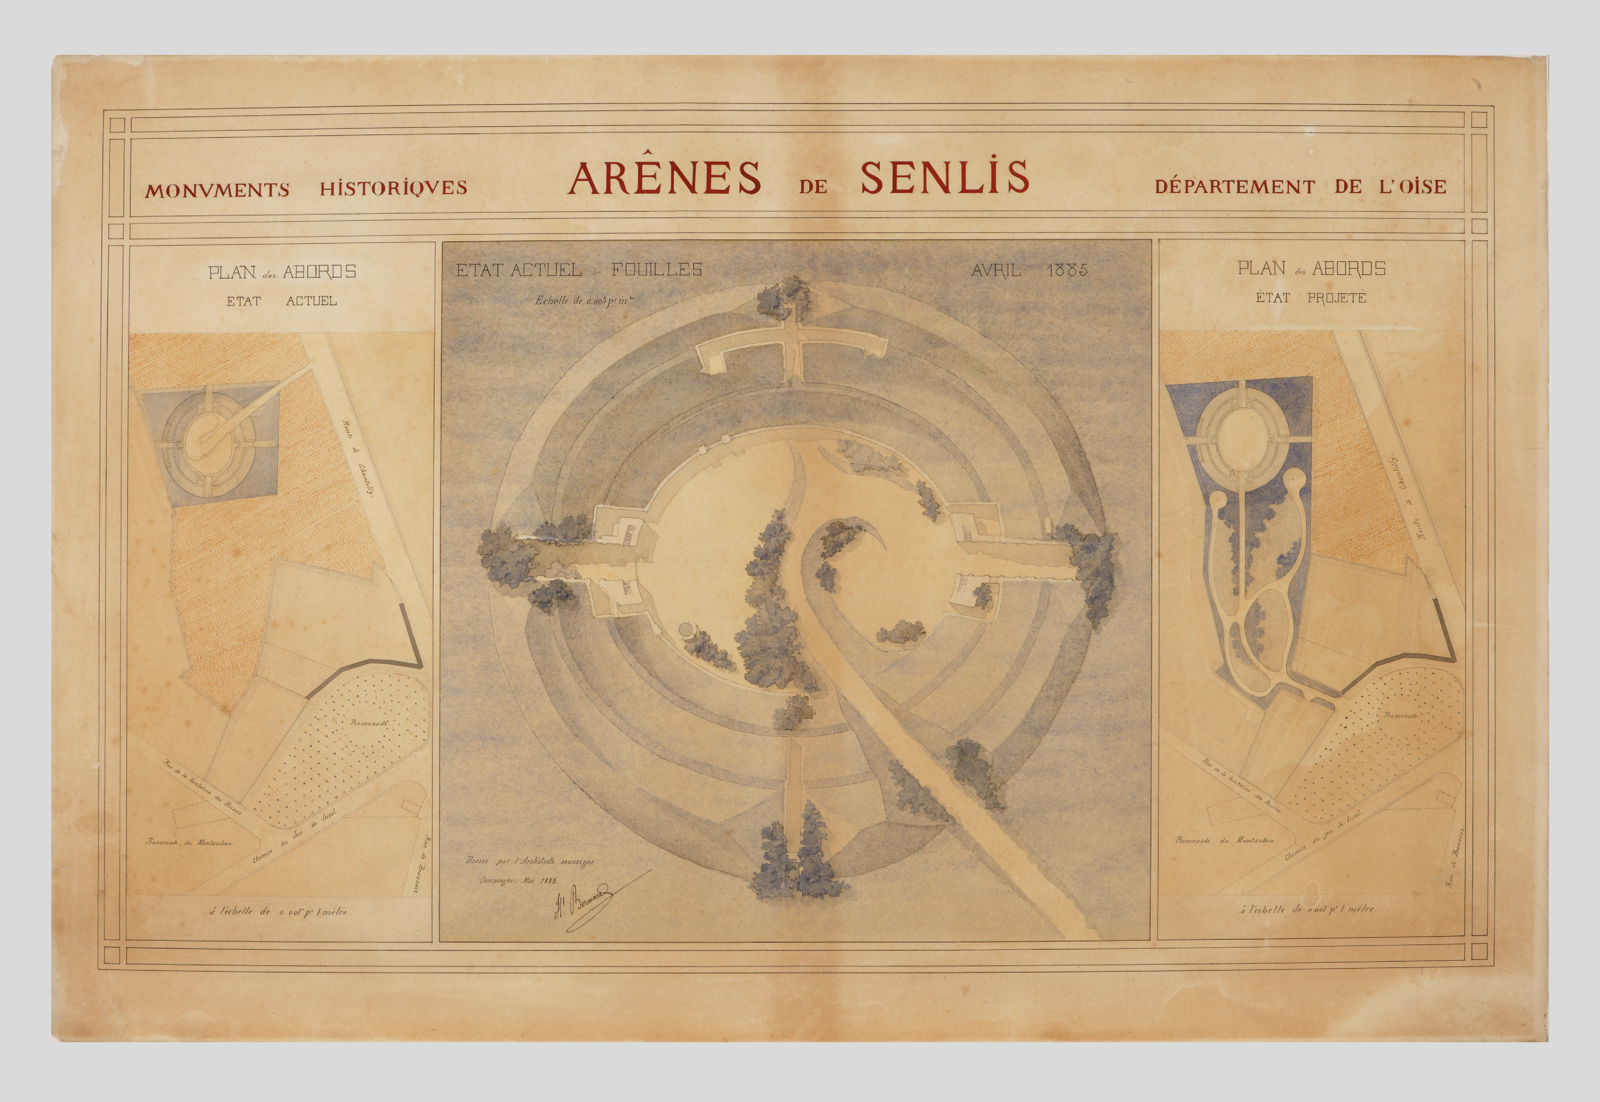 Les arènes de Senlis, état actuel des fouilles et plan des abords